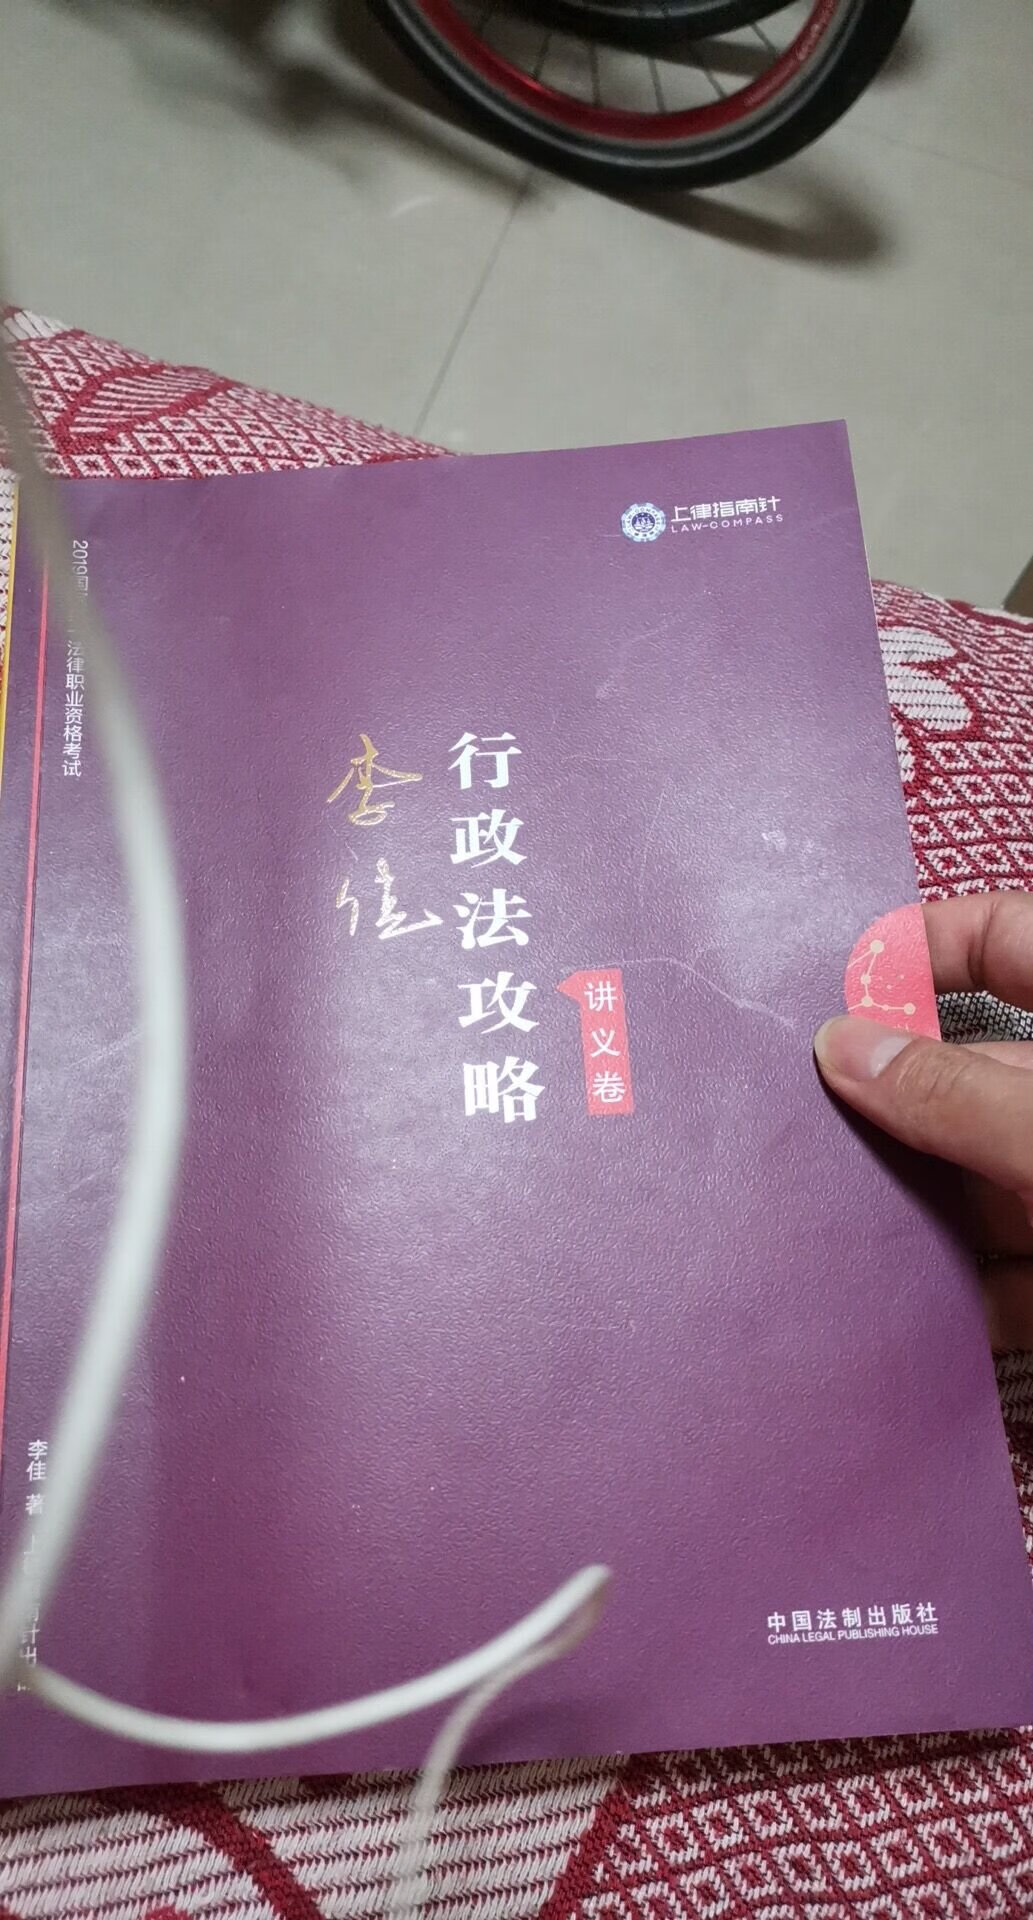 李佳老师的书简而言之，把难懂的话变成人话。